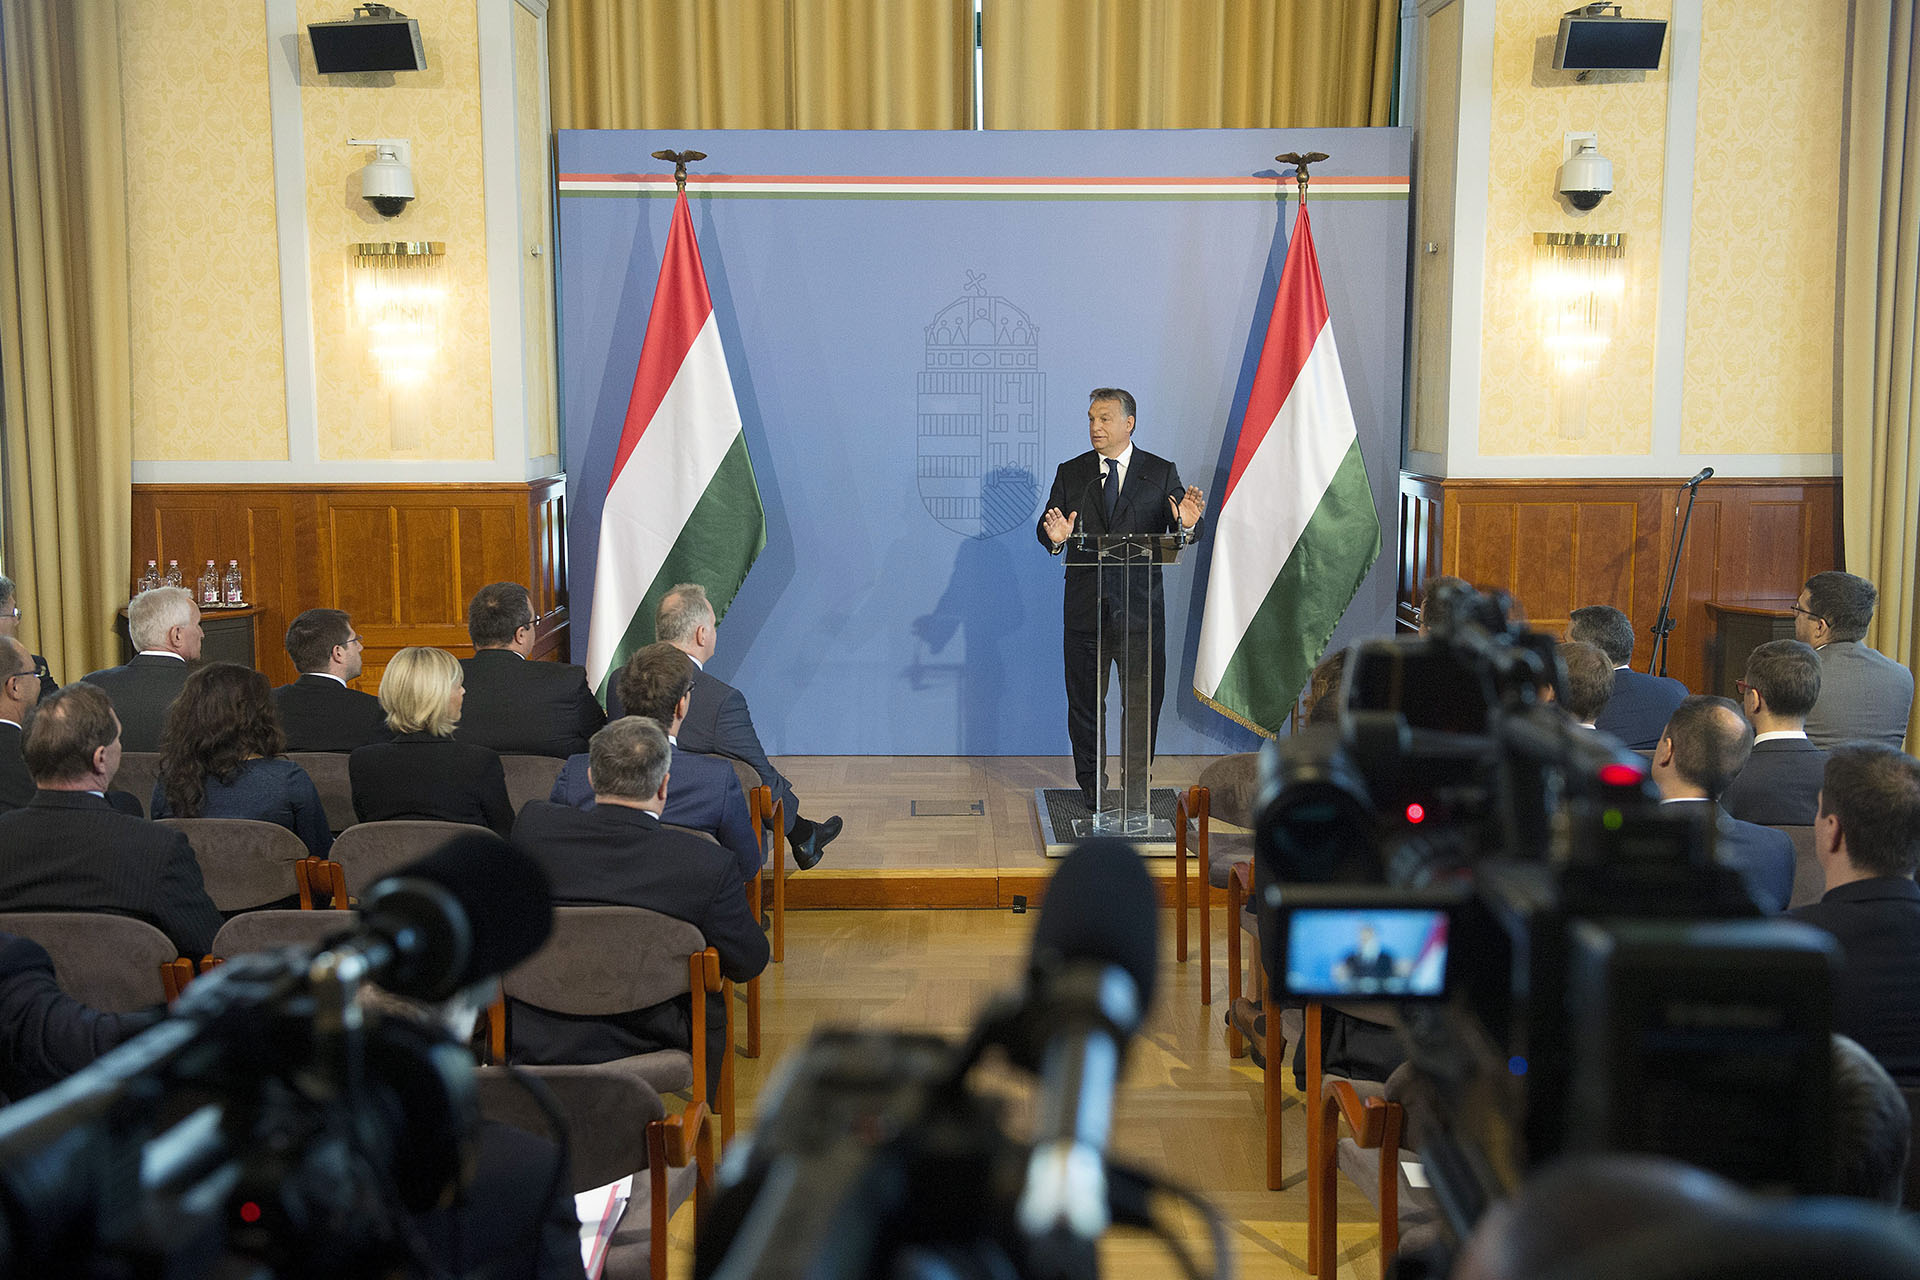 Nagykövetek segítenek terjeszteni Orbán hét pontját, miután több külföldi újság is visszautasította a megjelentetését